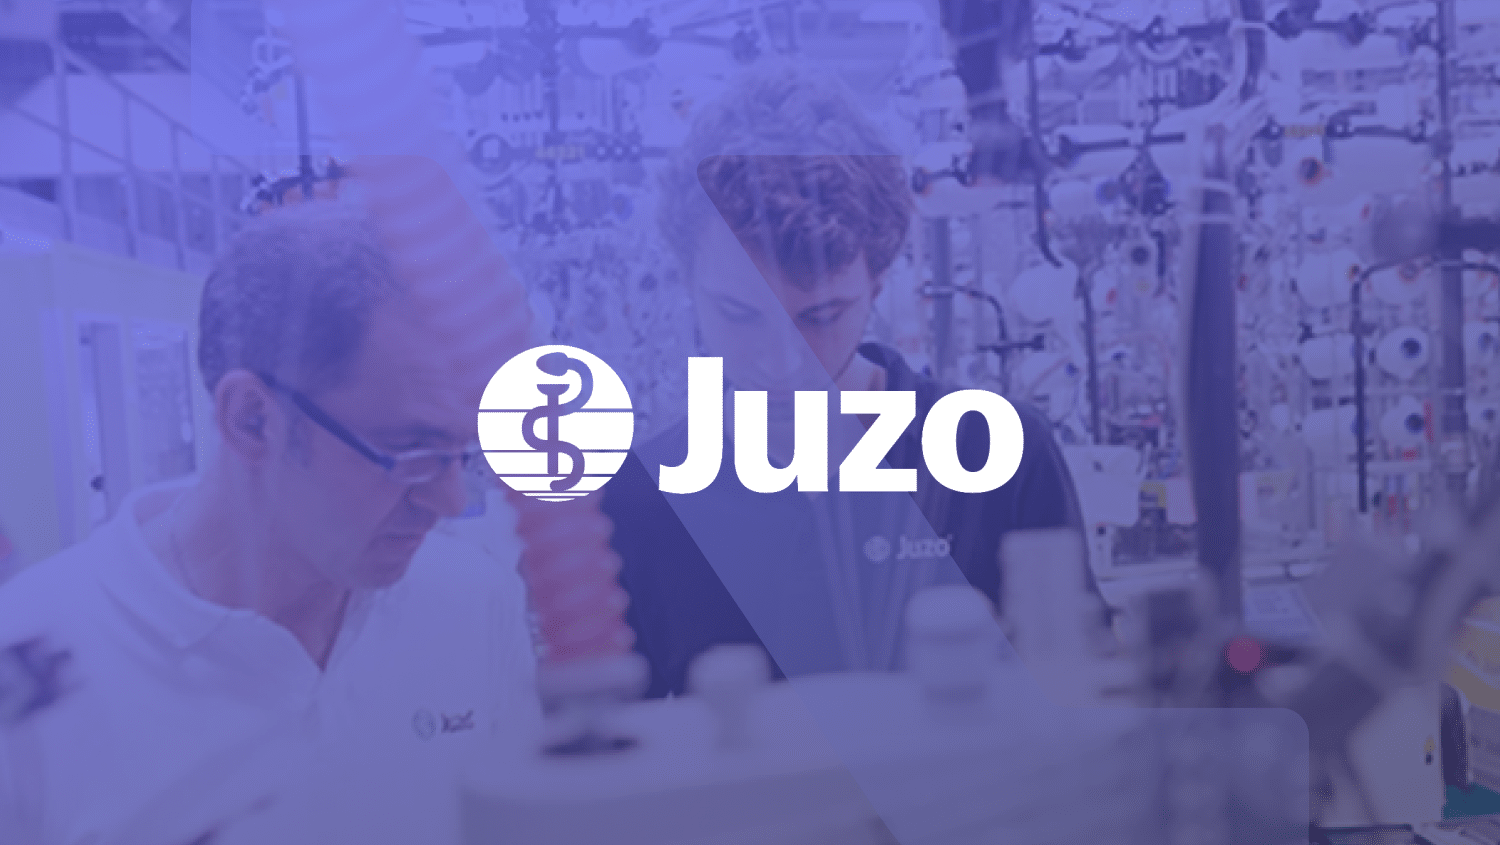 Customer story with Juzo